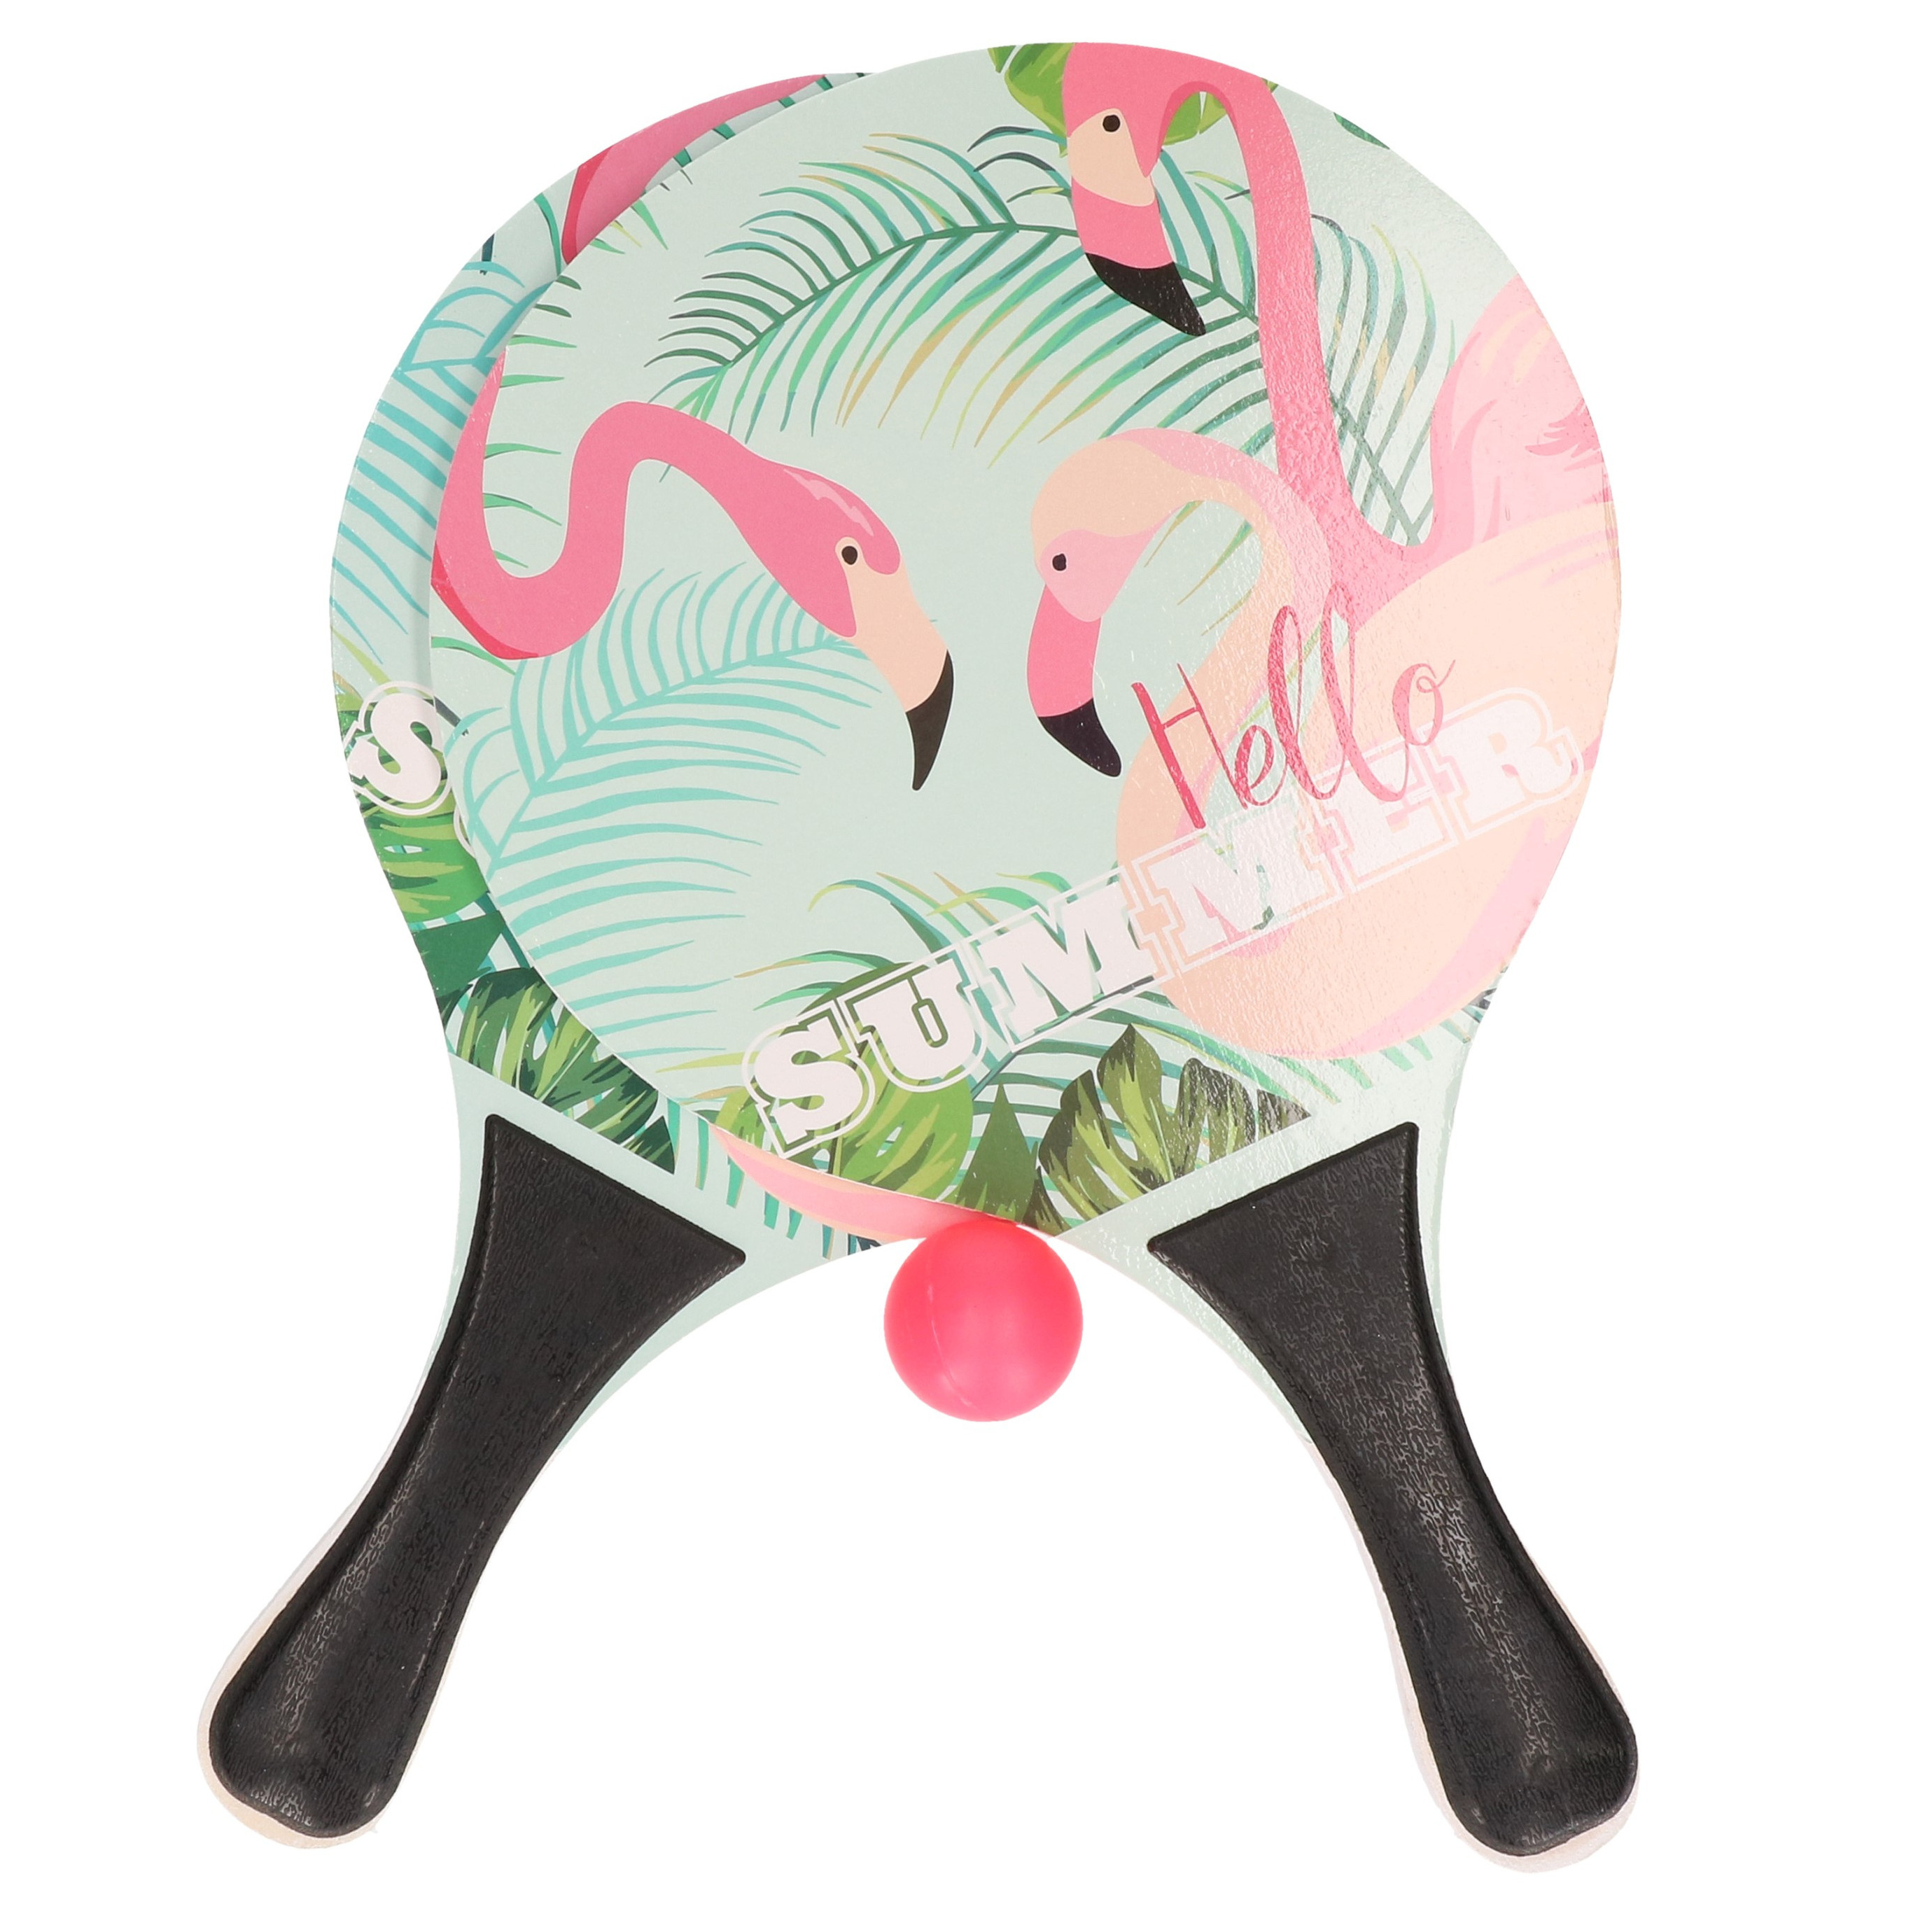 Actief speelgoed tennis-beachball setje zwart met flamingomotief